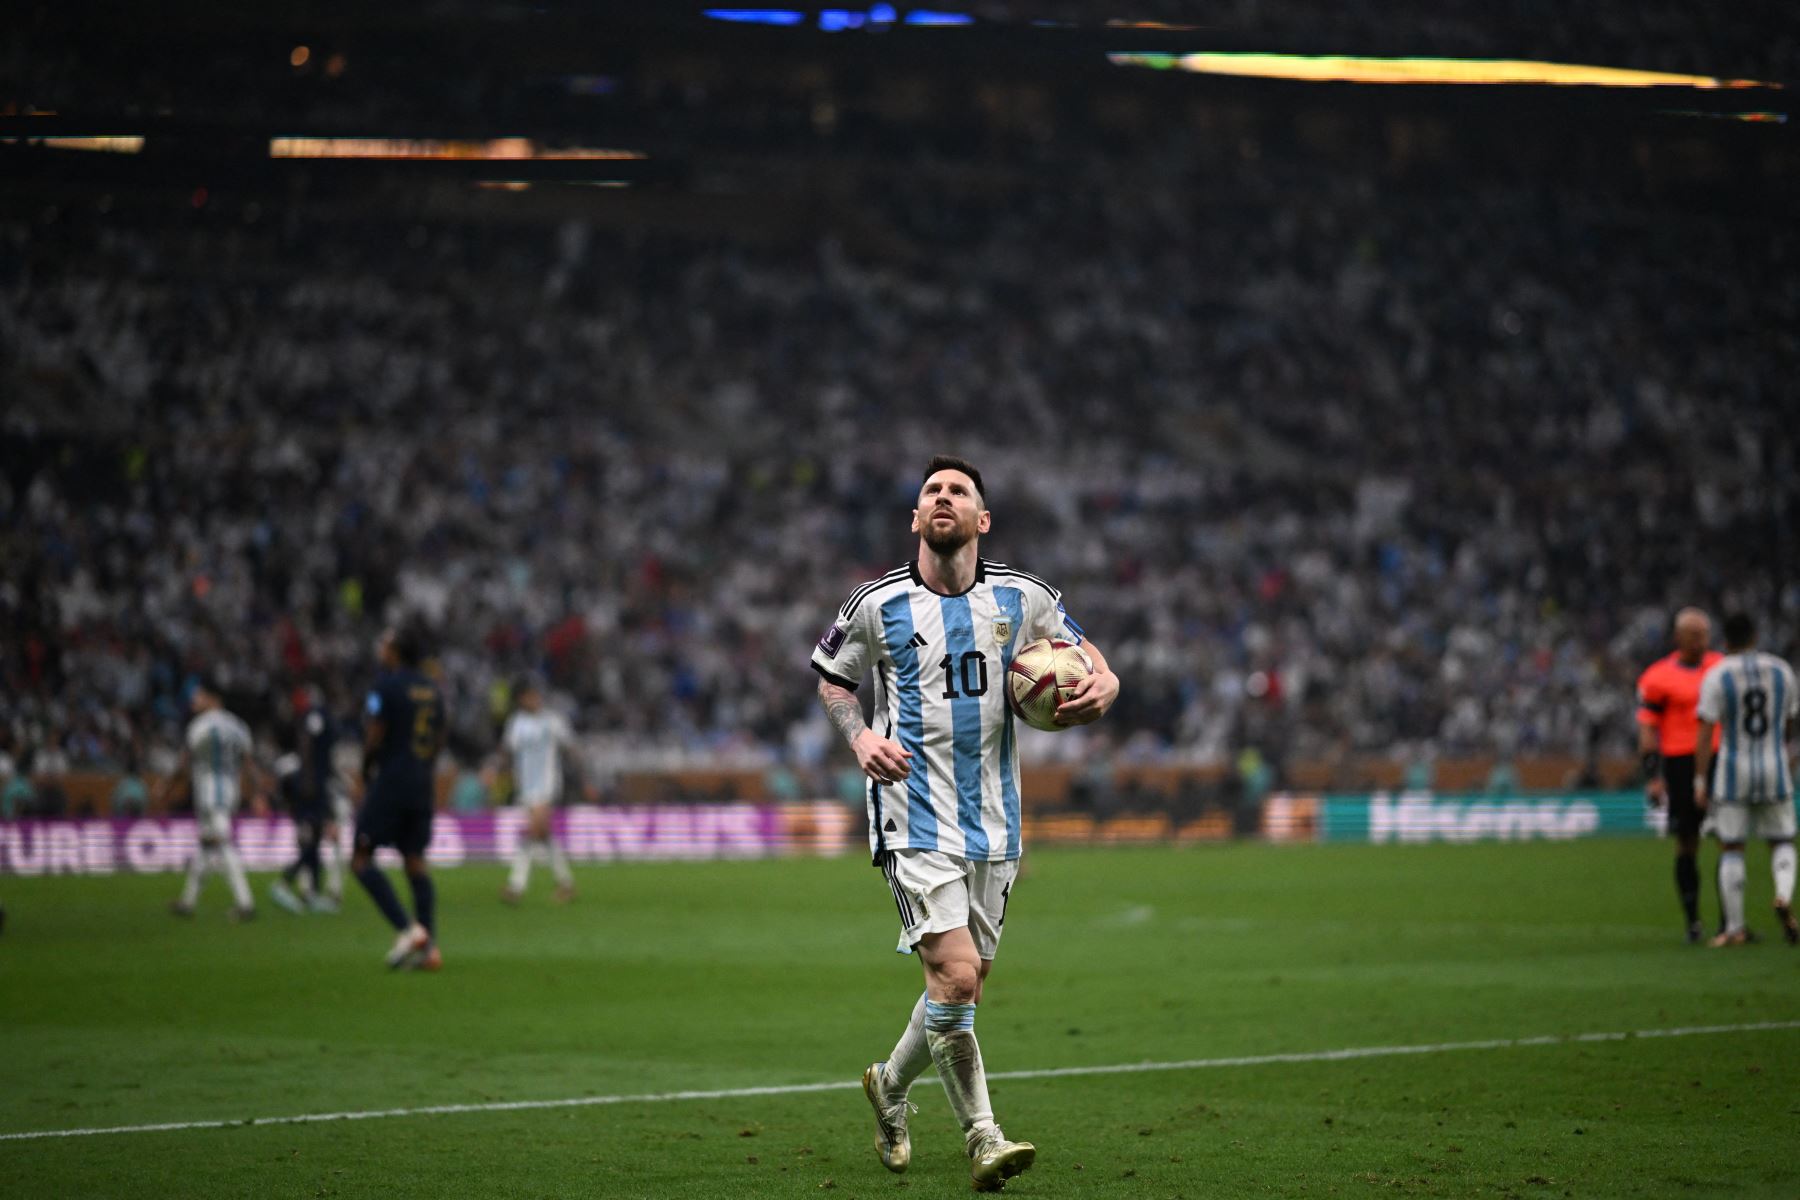 El delantero argentino Lionel Messi reacciona antes de la tanda de penales durante el partido de fútbol final de la Copa Mundial Qatar 2022 entre Argentina y Francia en el Estadio Lusail en Lusail, al norte de Doha, el 18 de diciembre de 2022.
Foto: AFP